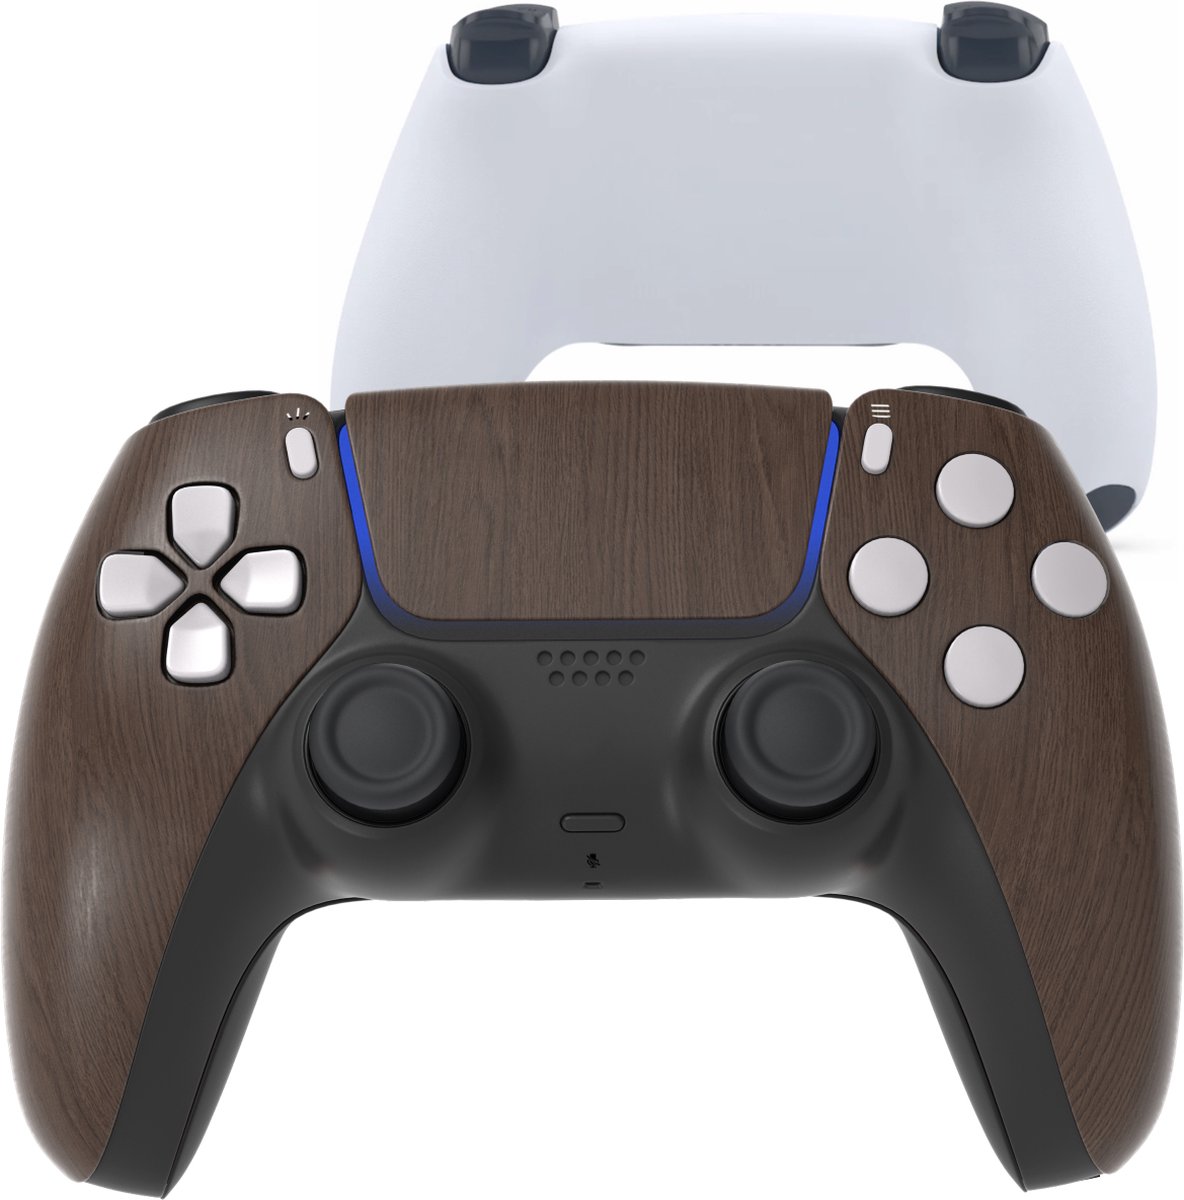 CS Draadloze Controller voor PS5 Wood/Hout Custom